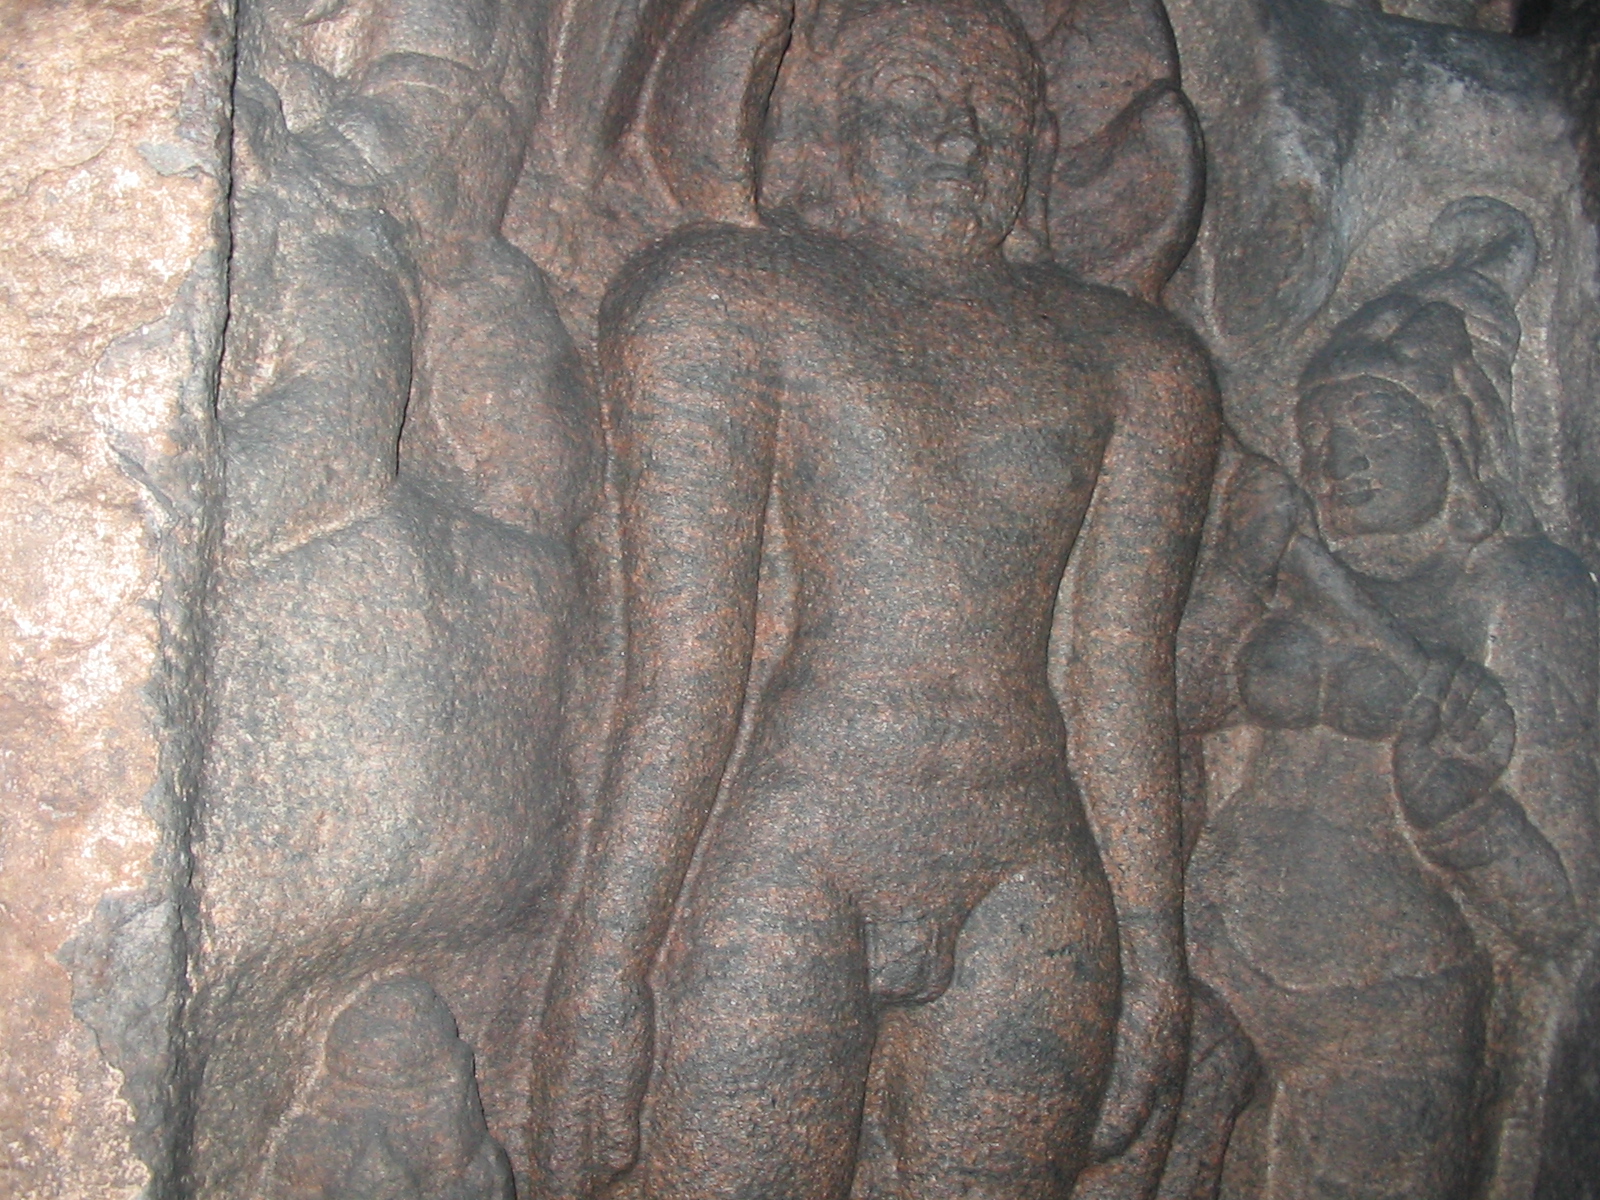 Pasvanathar